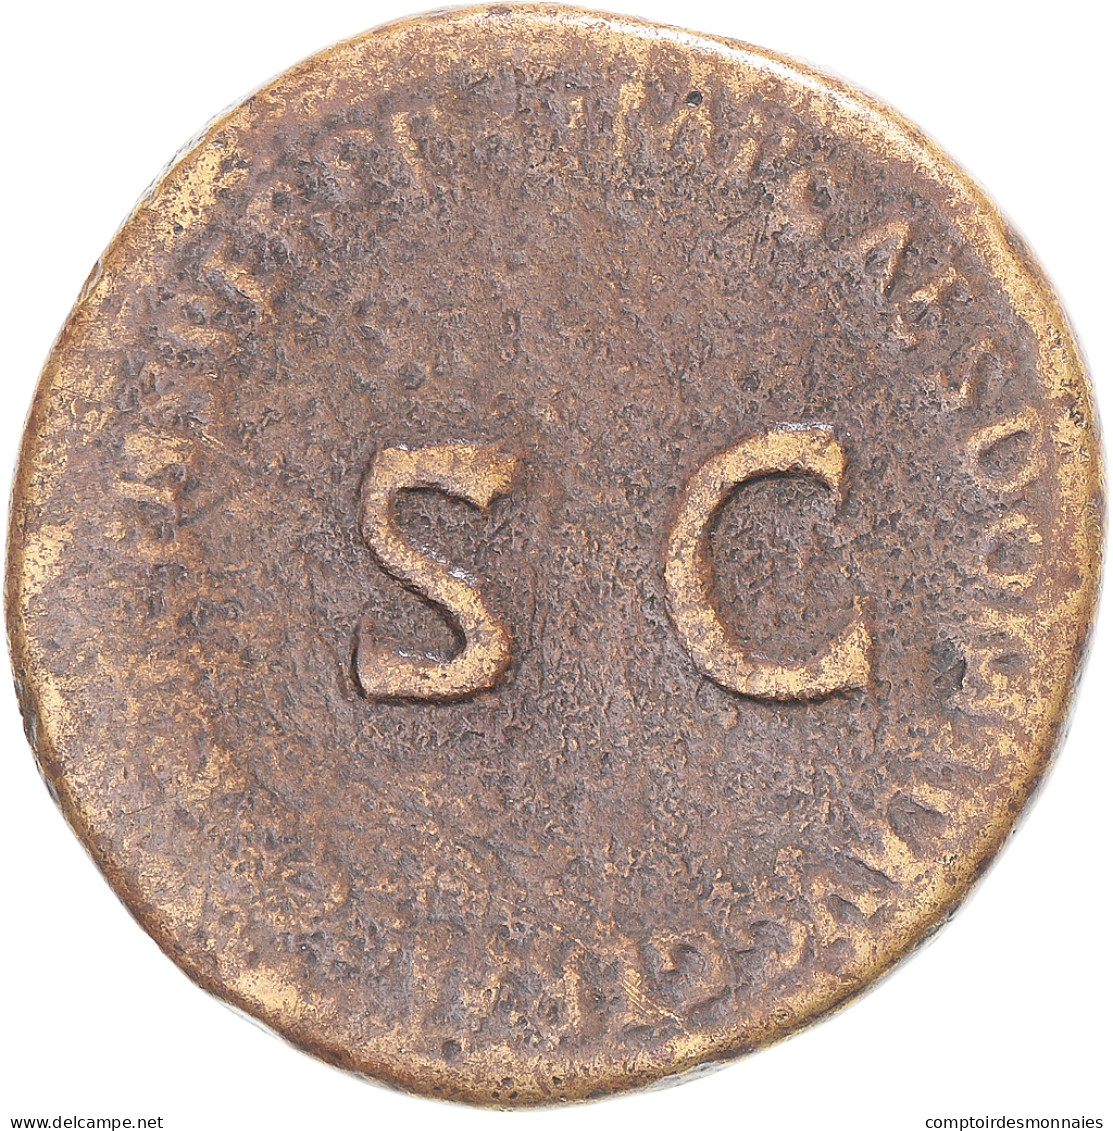 Monnaie, Domitien, Sesterce, 92-94, Rome, B+, Bronze, RIC:760 - Les Flaviens (69 à 96)